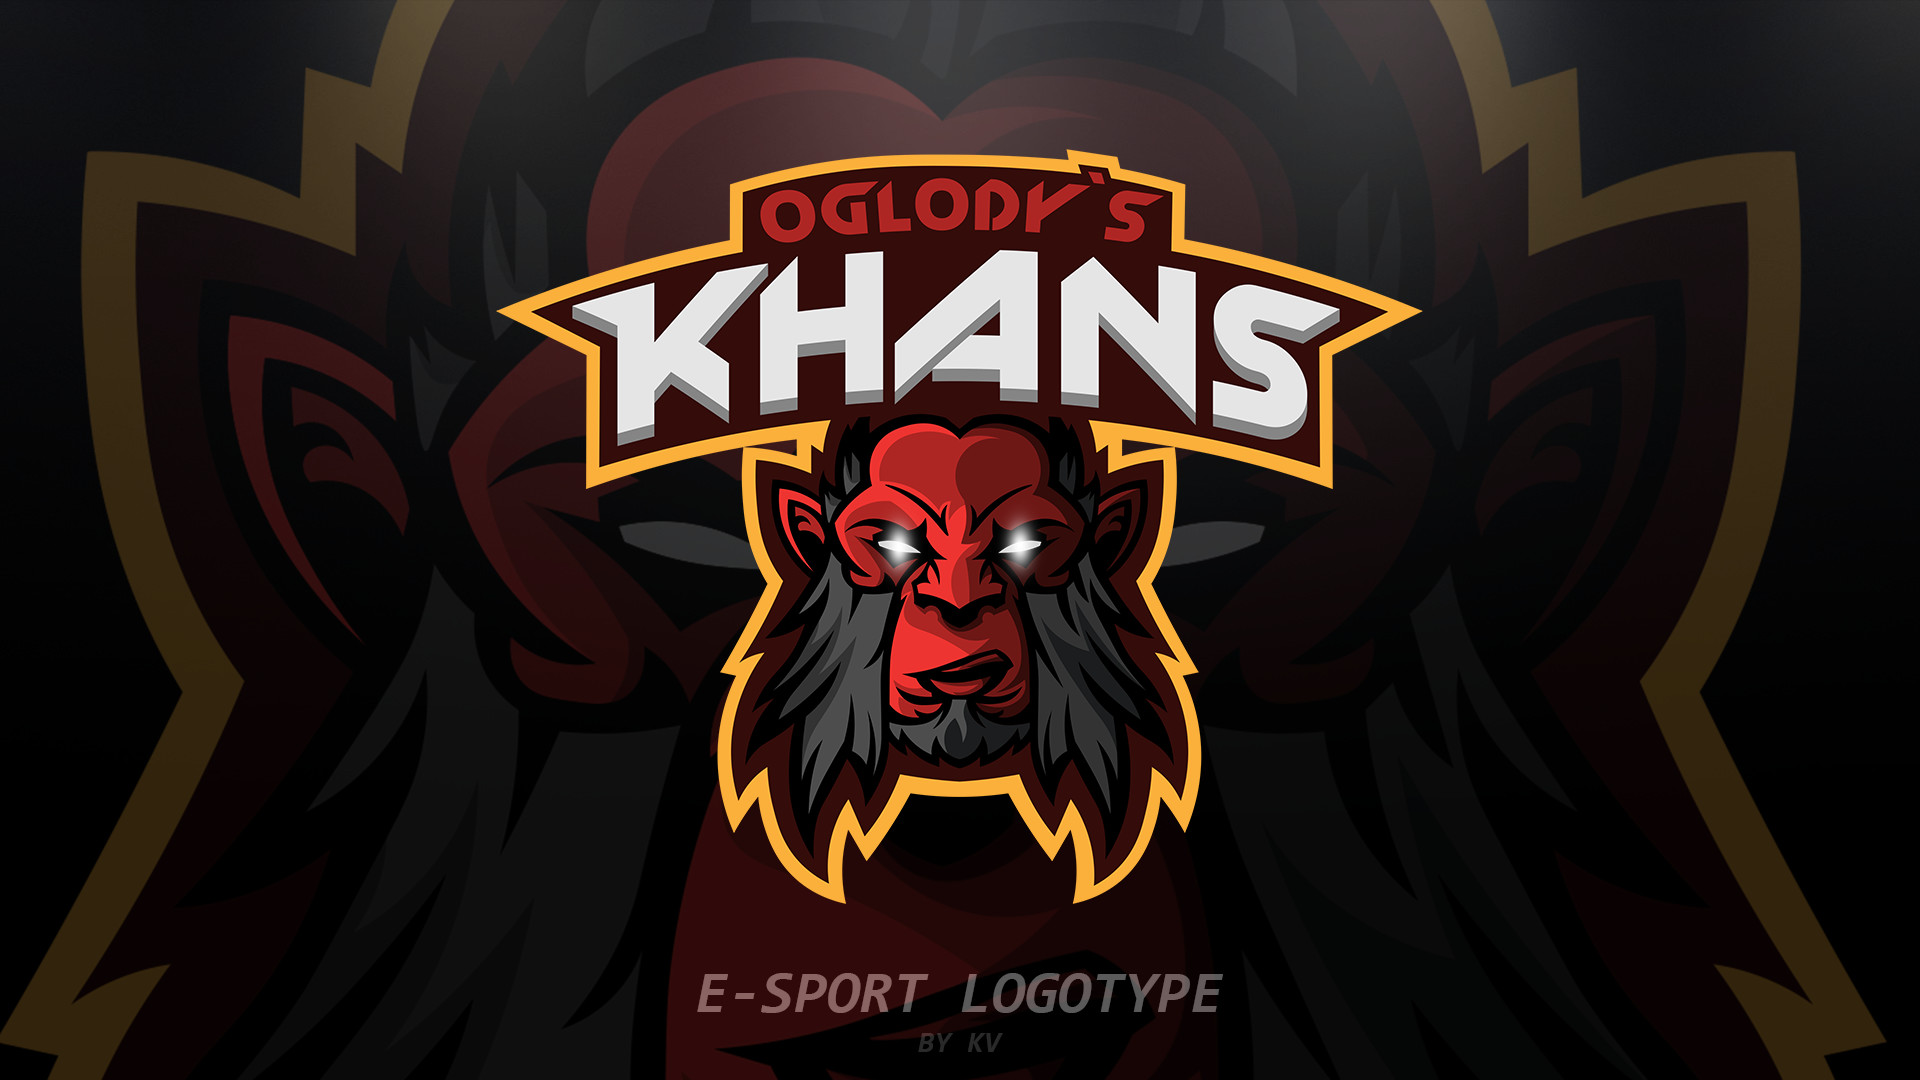 ArtStation - Oglody`s KHANS DOTA 2 E - Sport Logo